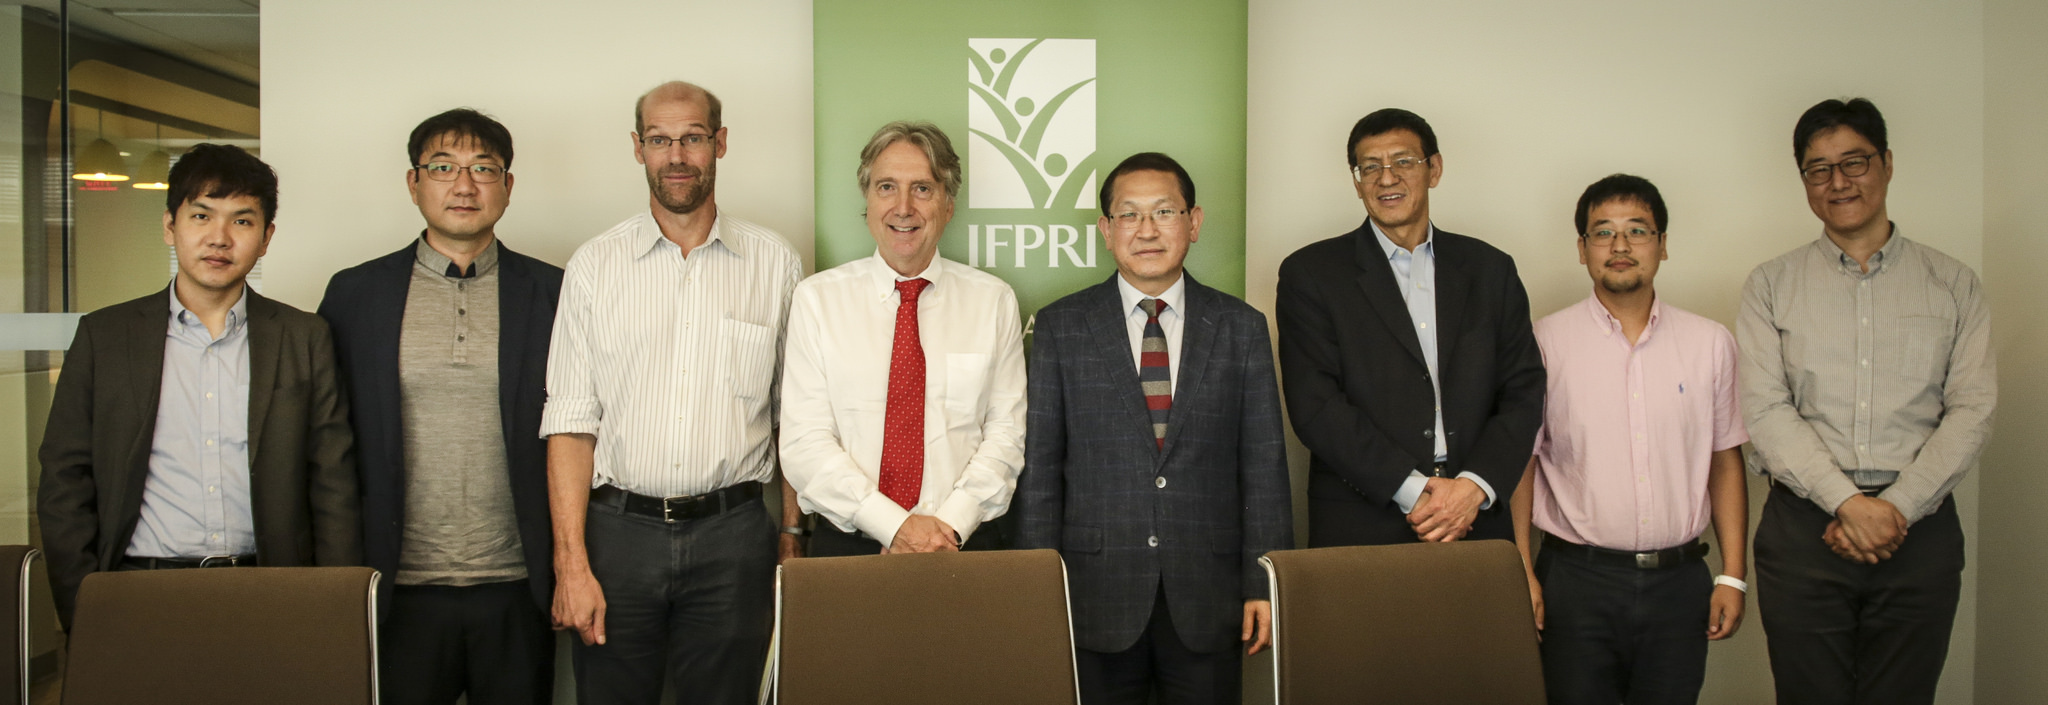 국제식량정책연구소( IFPRI)와 MOU 체결 연장 이미지